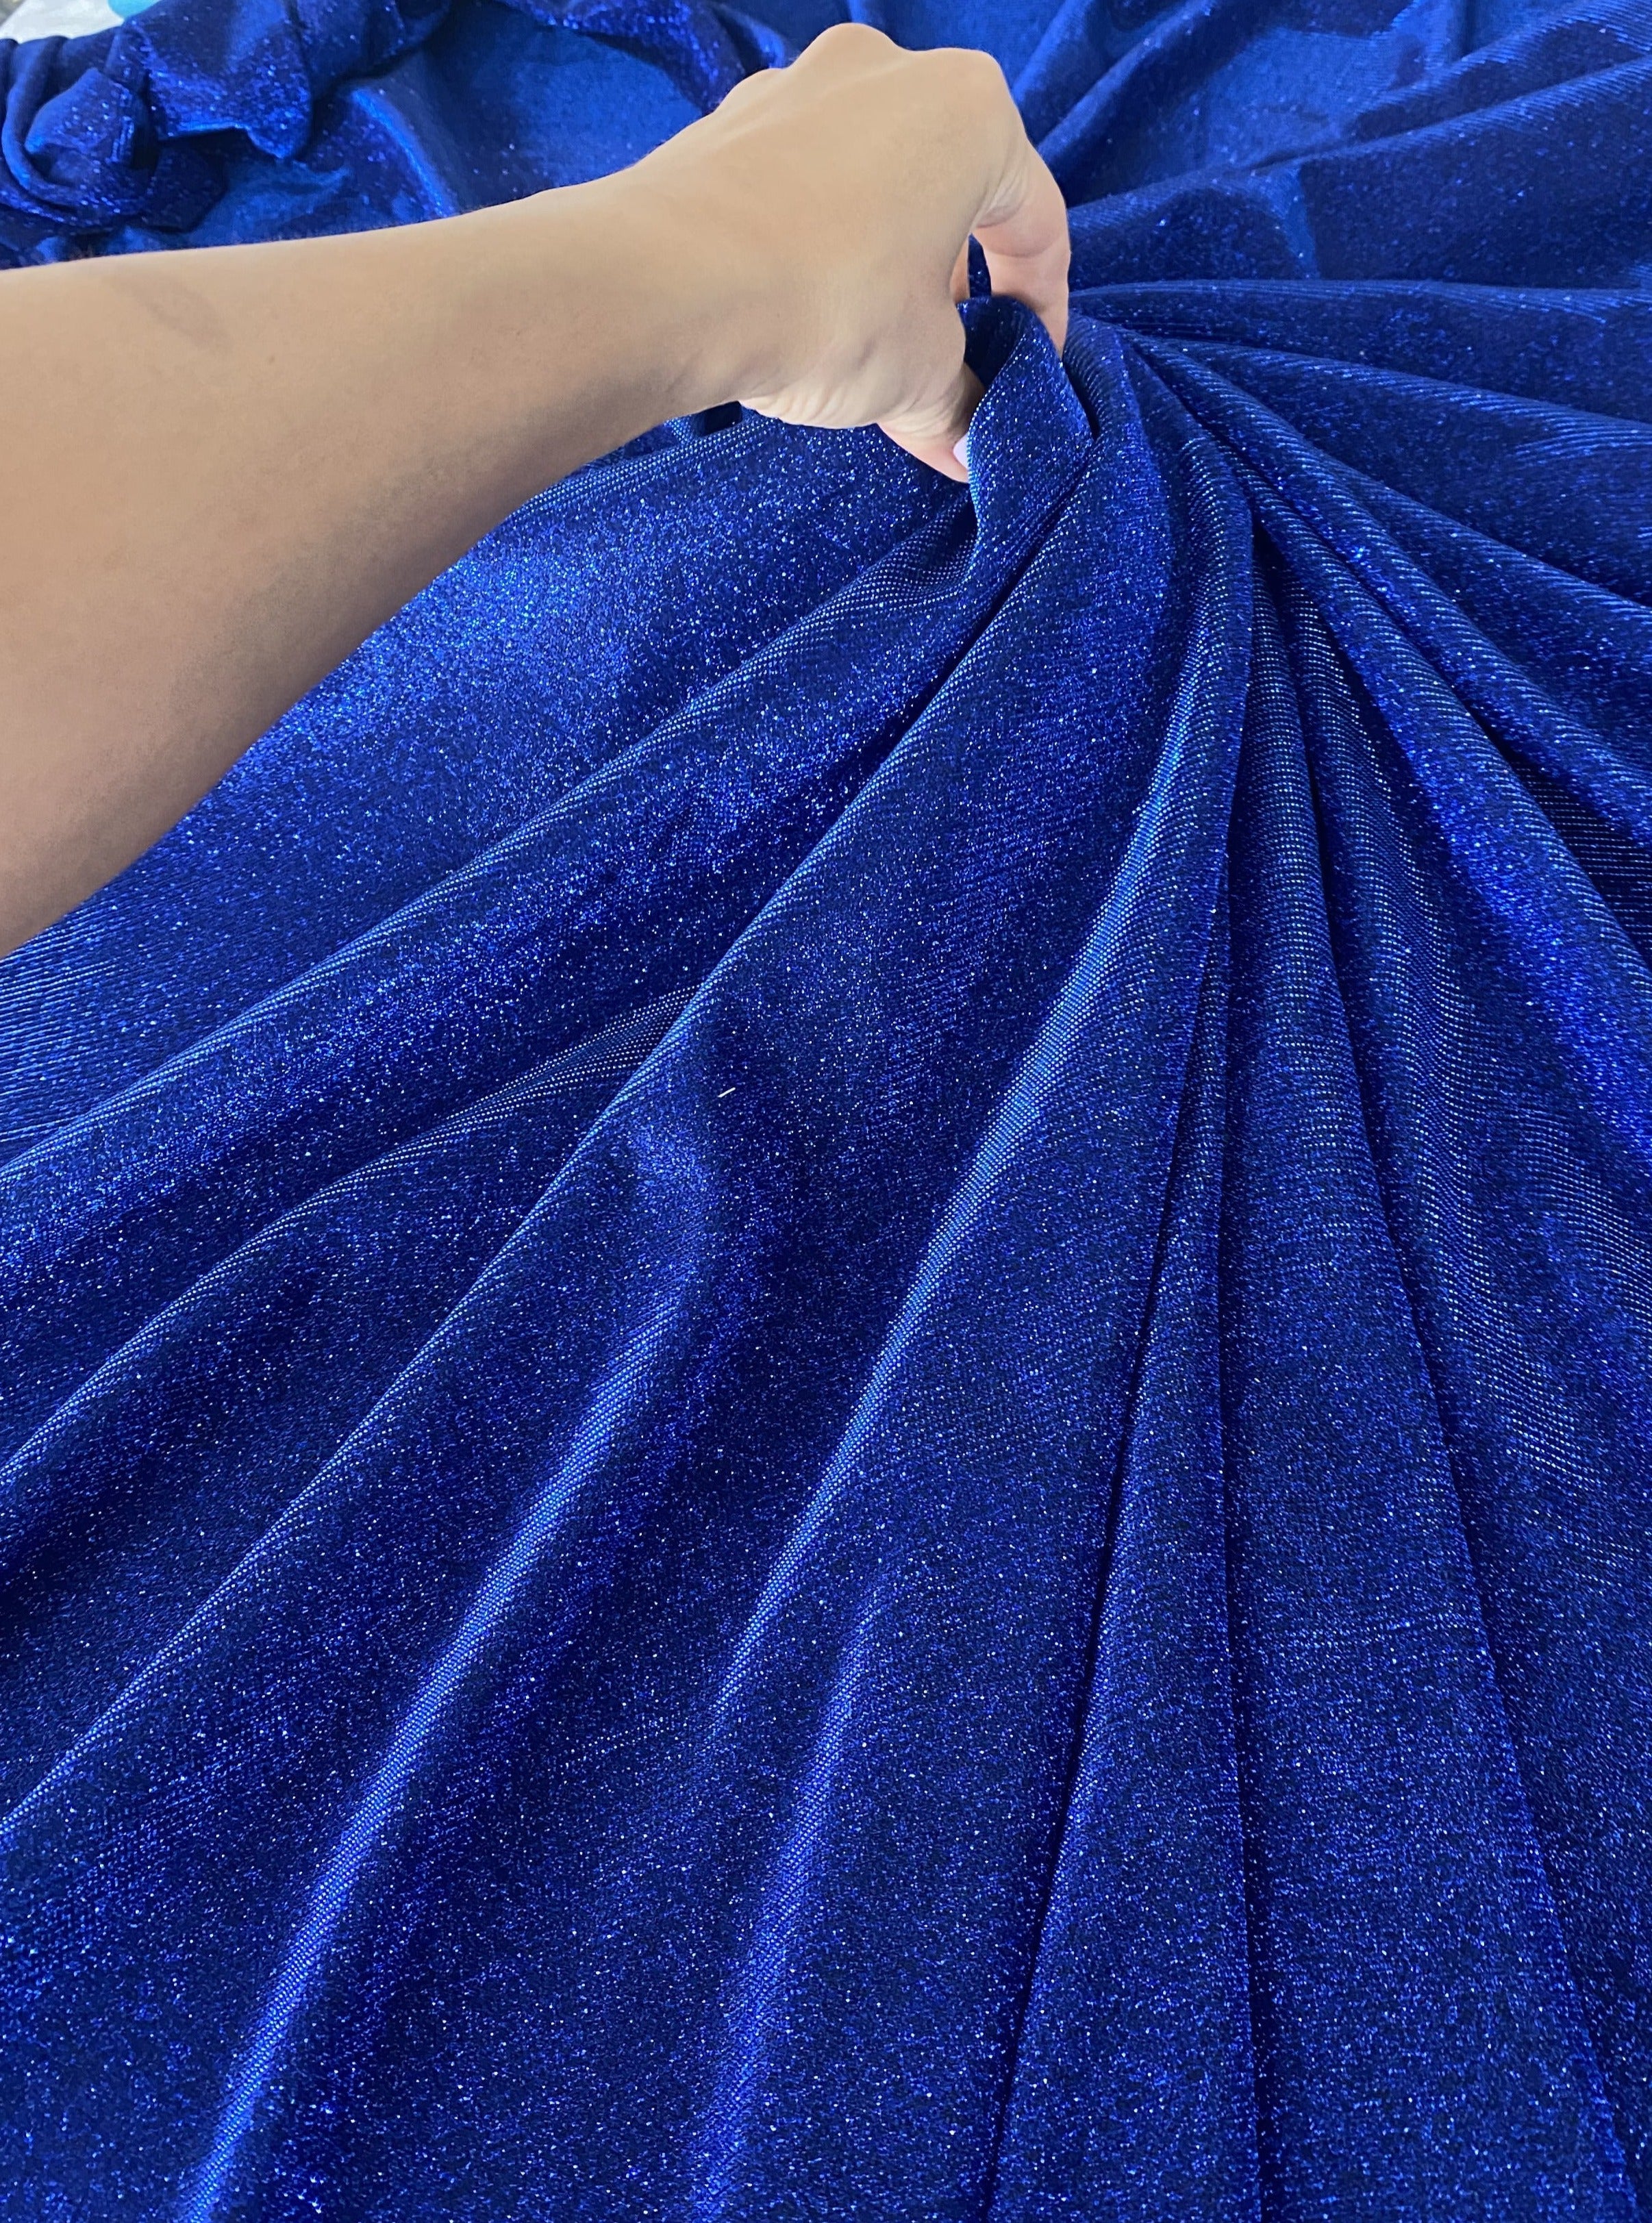 Royal Blue Metallic Lurex, light blue Metallic Lurex, dark Blue Metallic Lurex, Blue Metallic Lurex, aqua Blue Metallic Lurex, metallic lurex for woman, party wear metallic lurex, shiny lurex, metallic lurex for bride, lurex on discount, lurex on sale, buy metallic lurex online